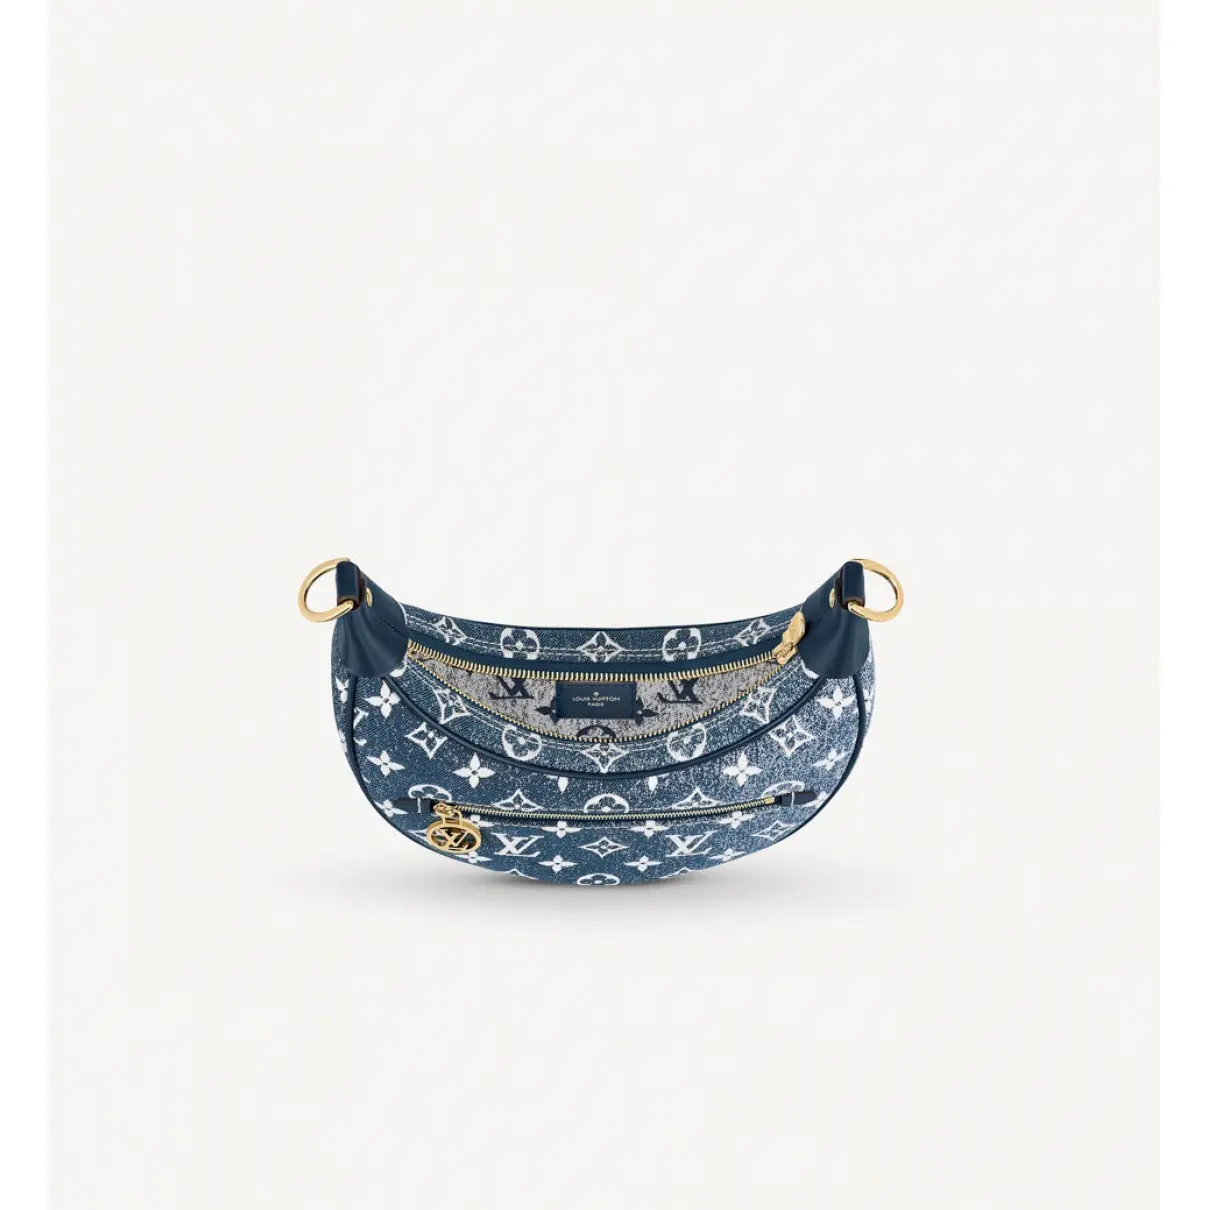 Buy Louis Vuitton Croissant handbag online